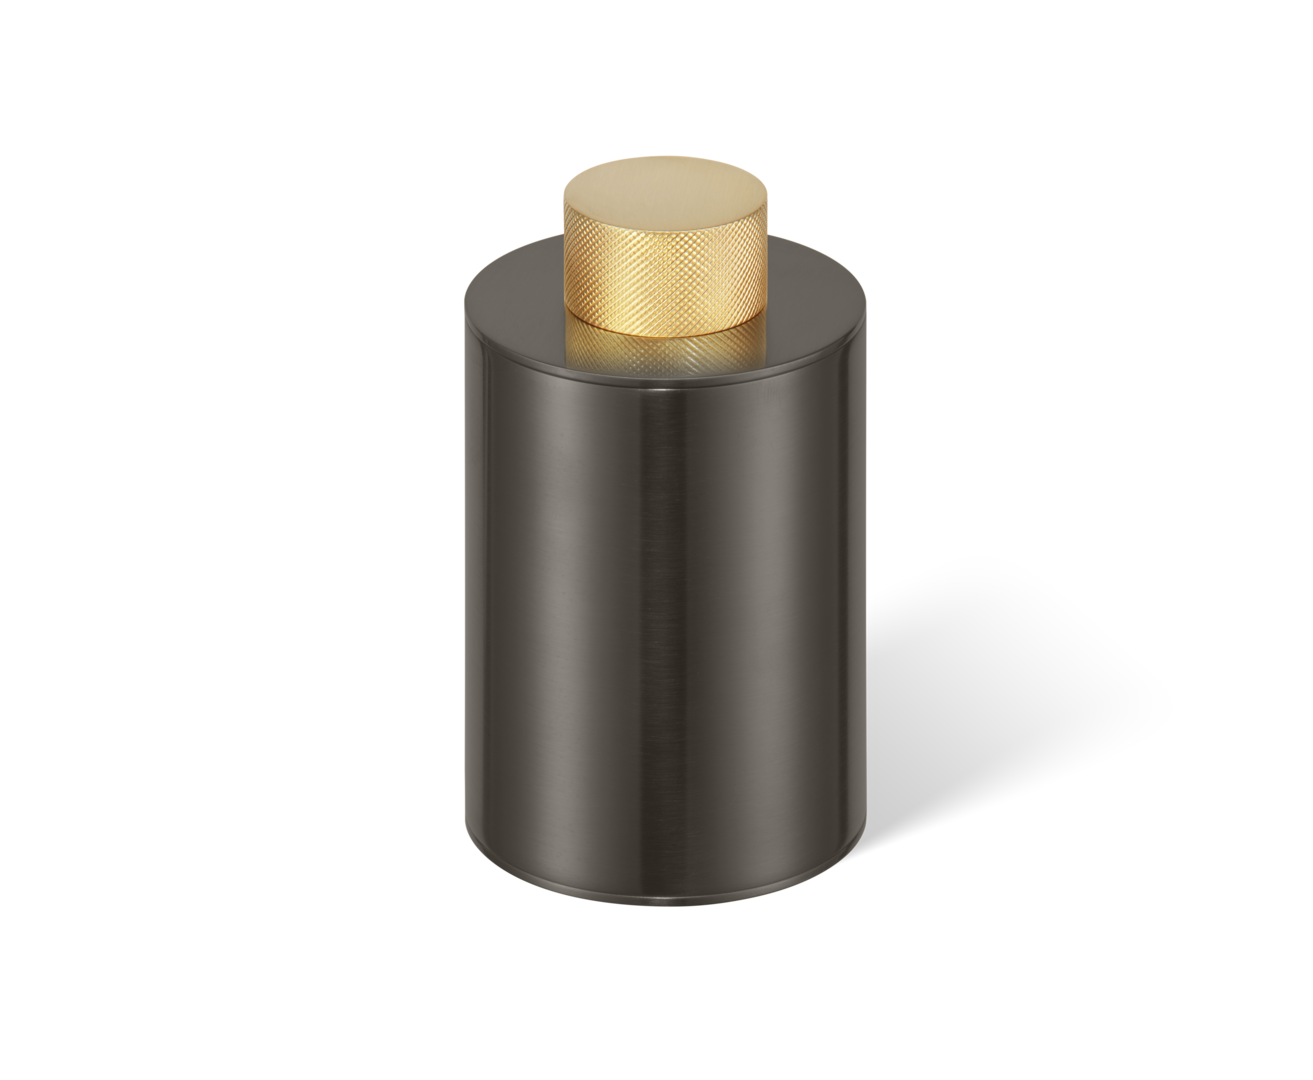 Dunkelbronze und Gold matt 24 Karat Schminkpinselbecher von Decor Walther, bietet eine stilvolle und praktische Lösung zur Aufbewahrung von Kosmetikpinseln im Badezimmer